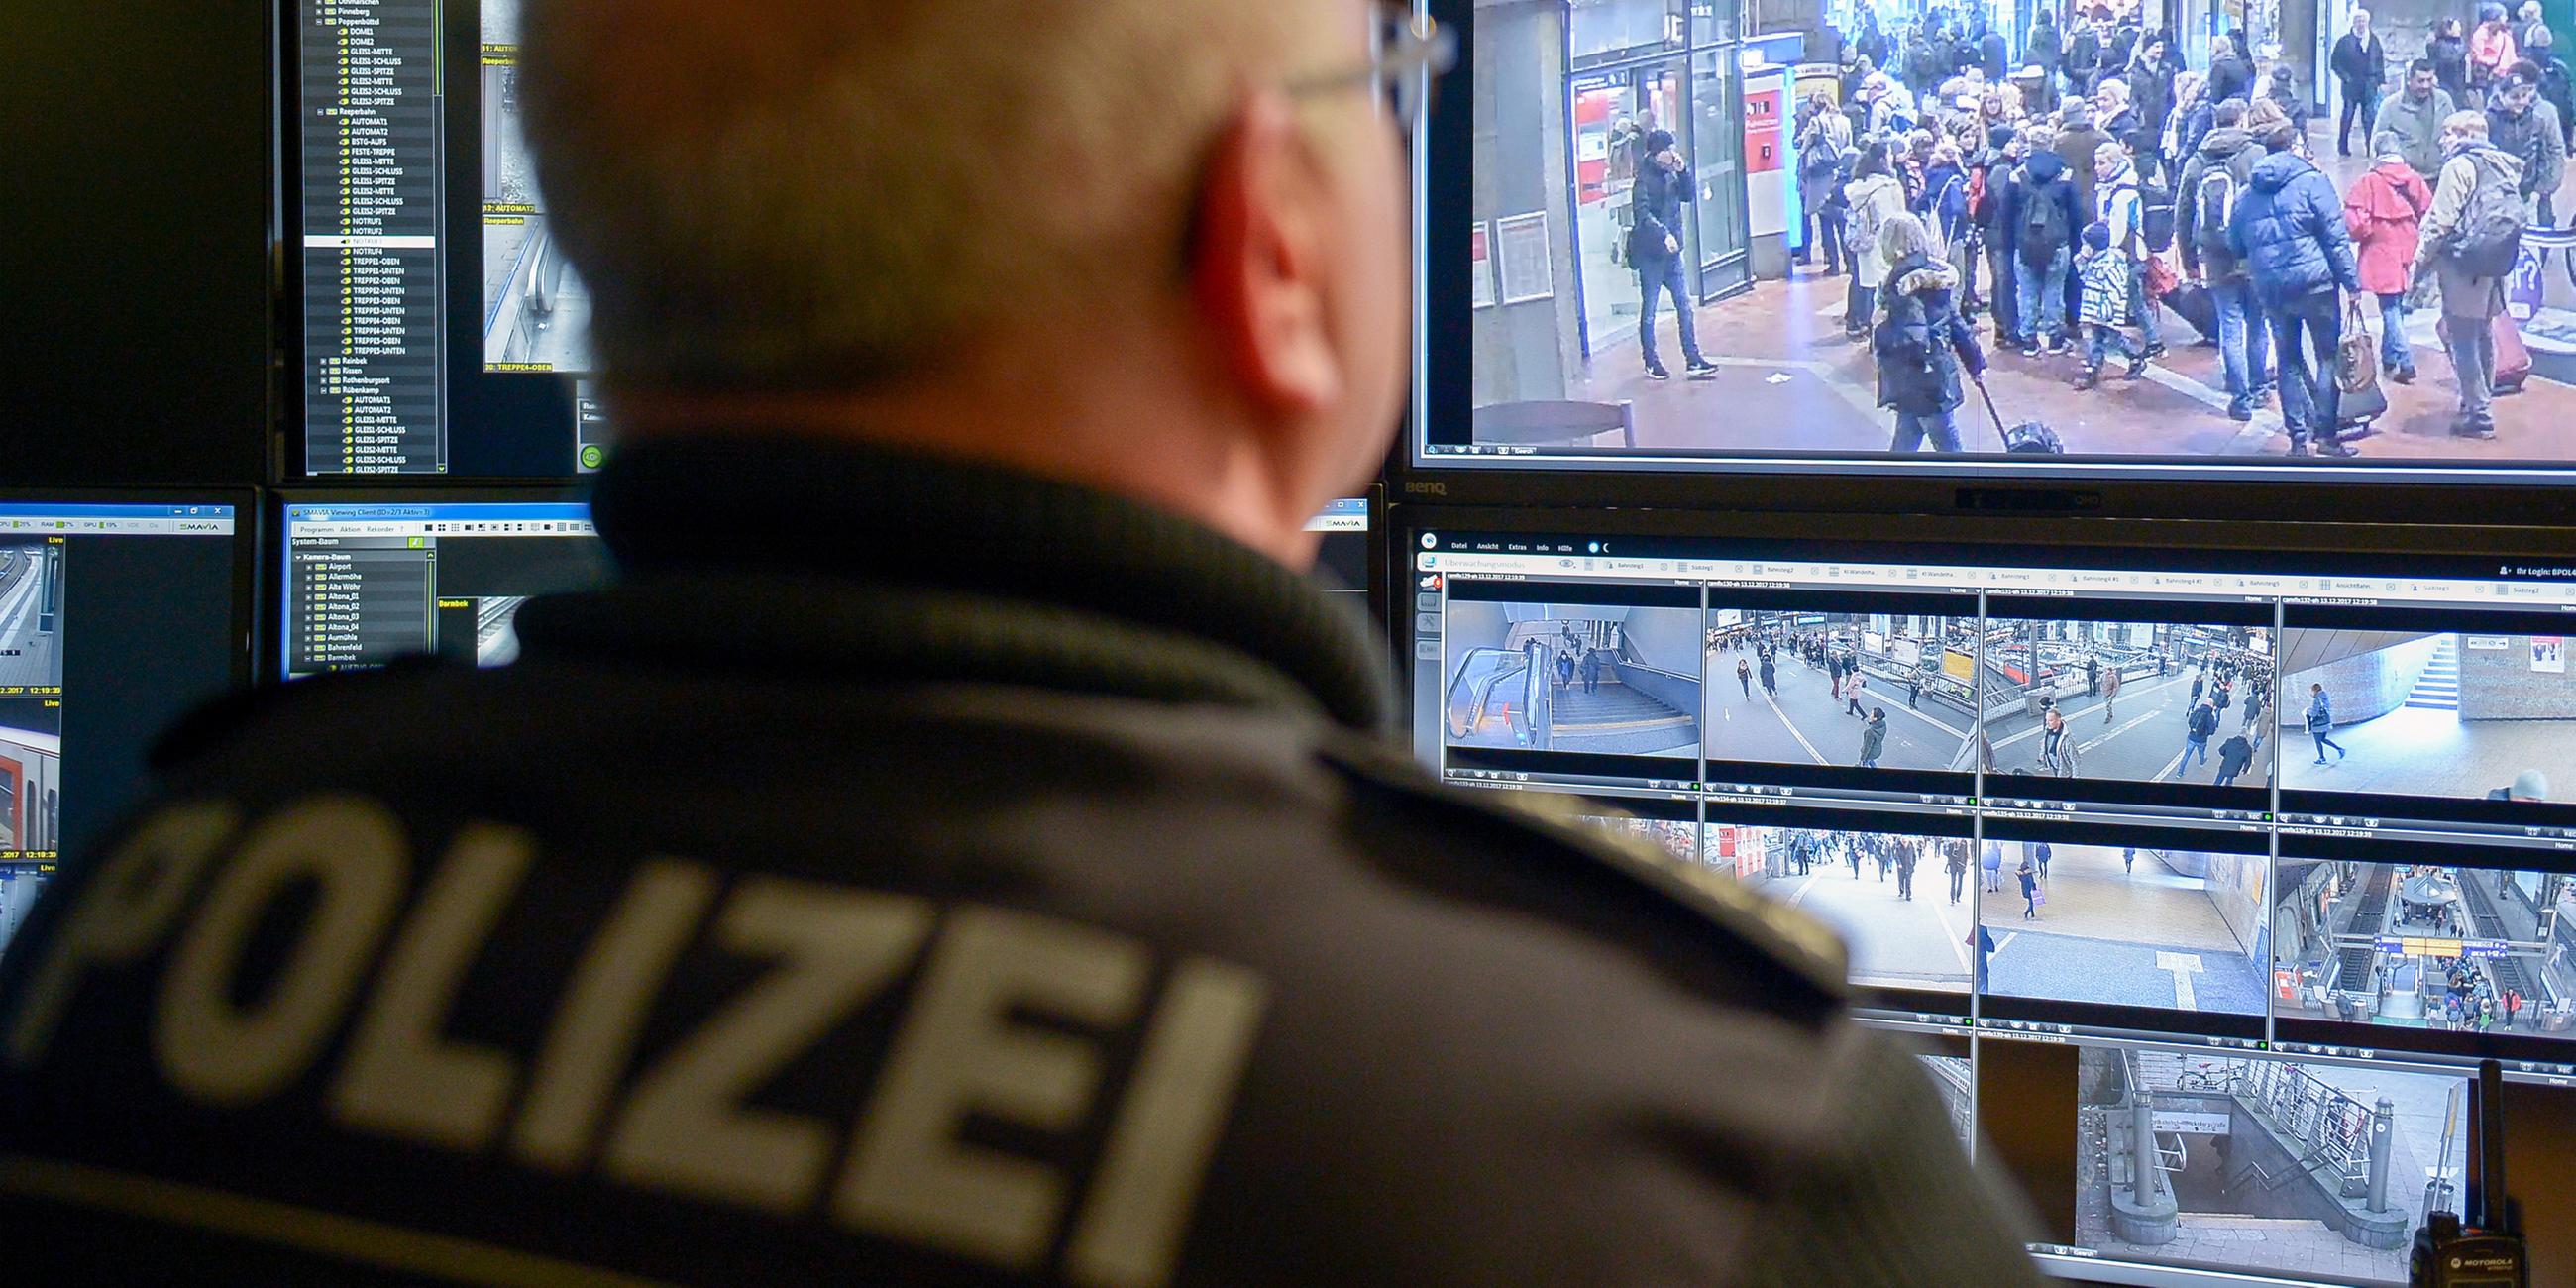 Archiv: Ein Beamter der Bundespolizei arbeitet an einem Videoarbeitsplatz, auf dessen Monitoren Live-Bilder von Überwachungskameras zu sehen sind